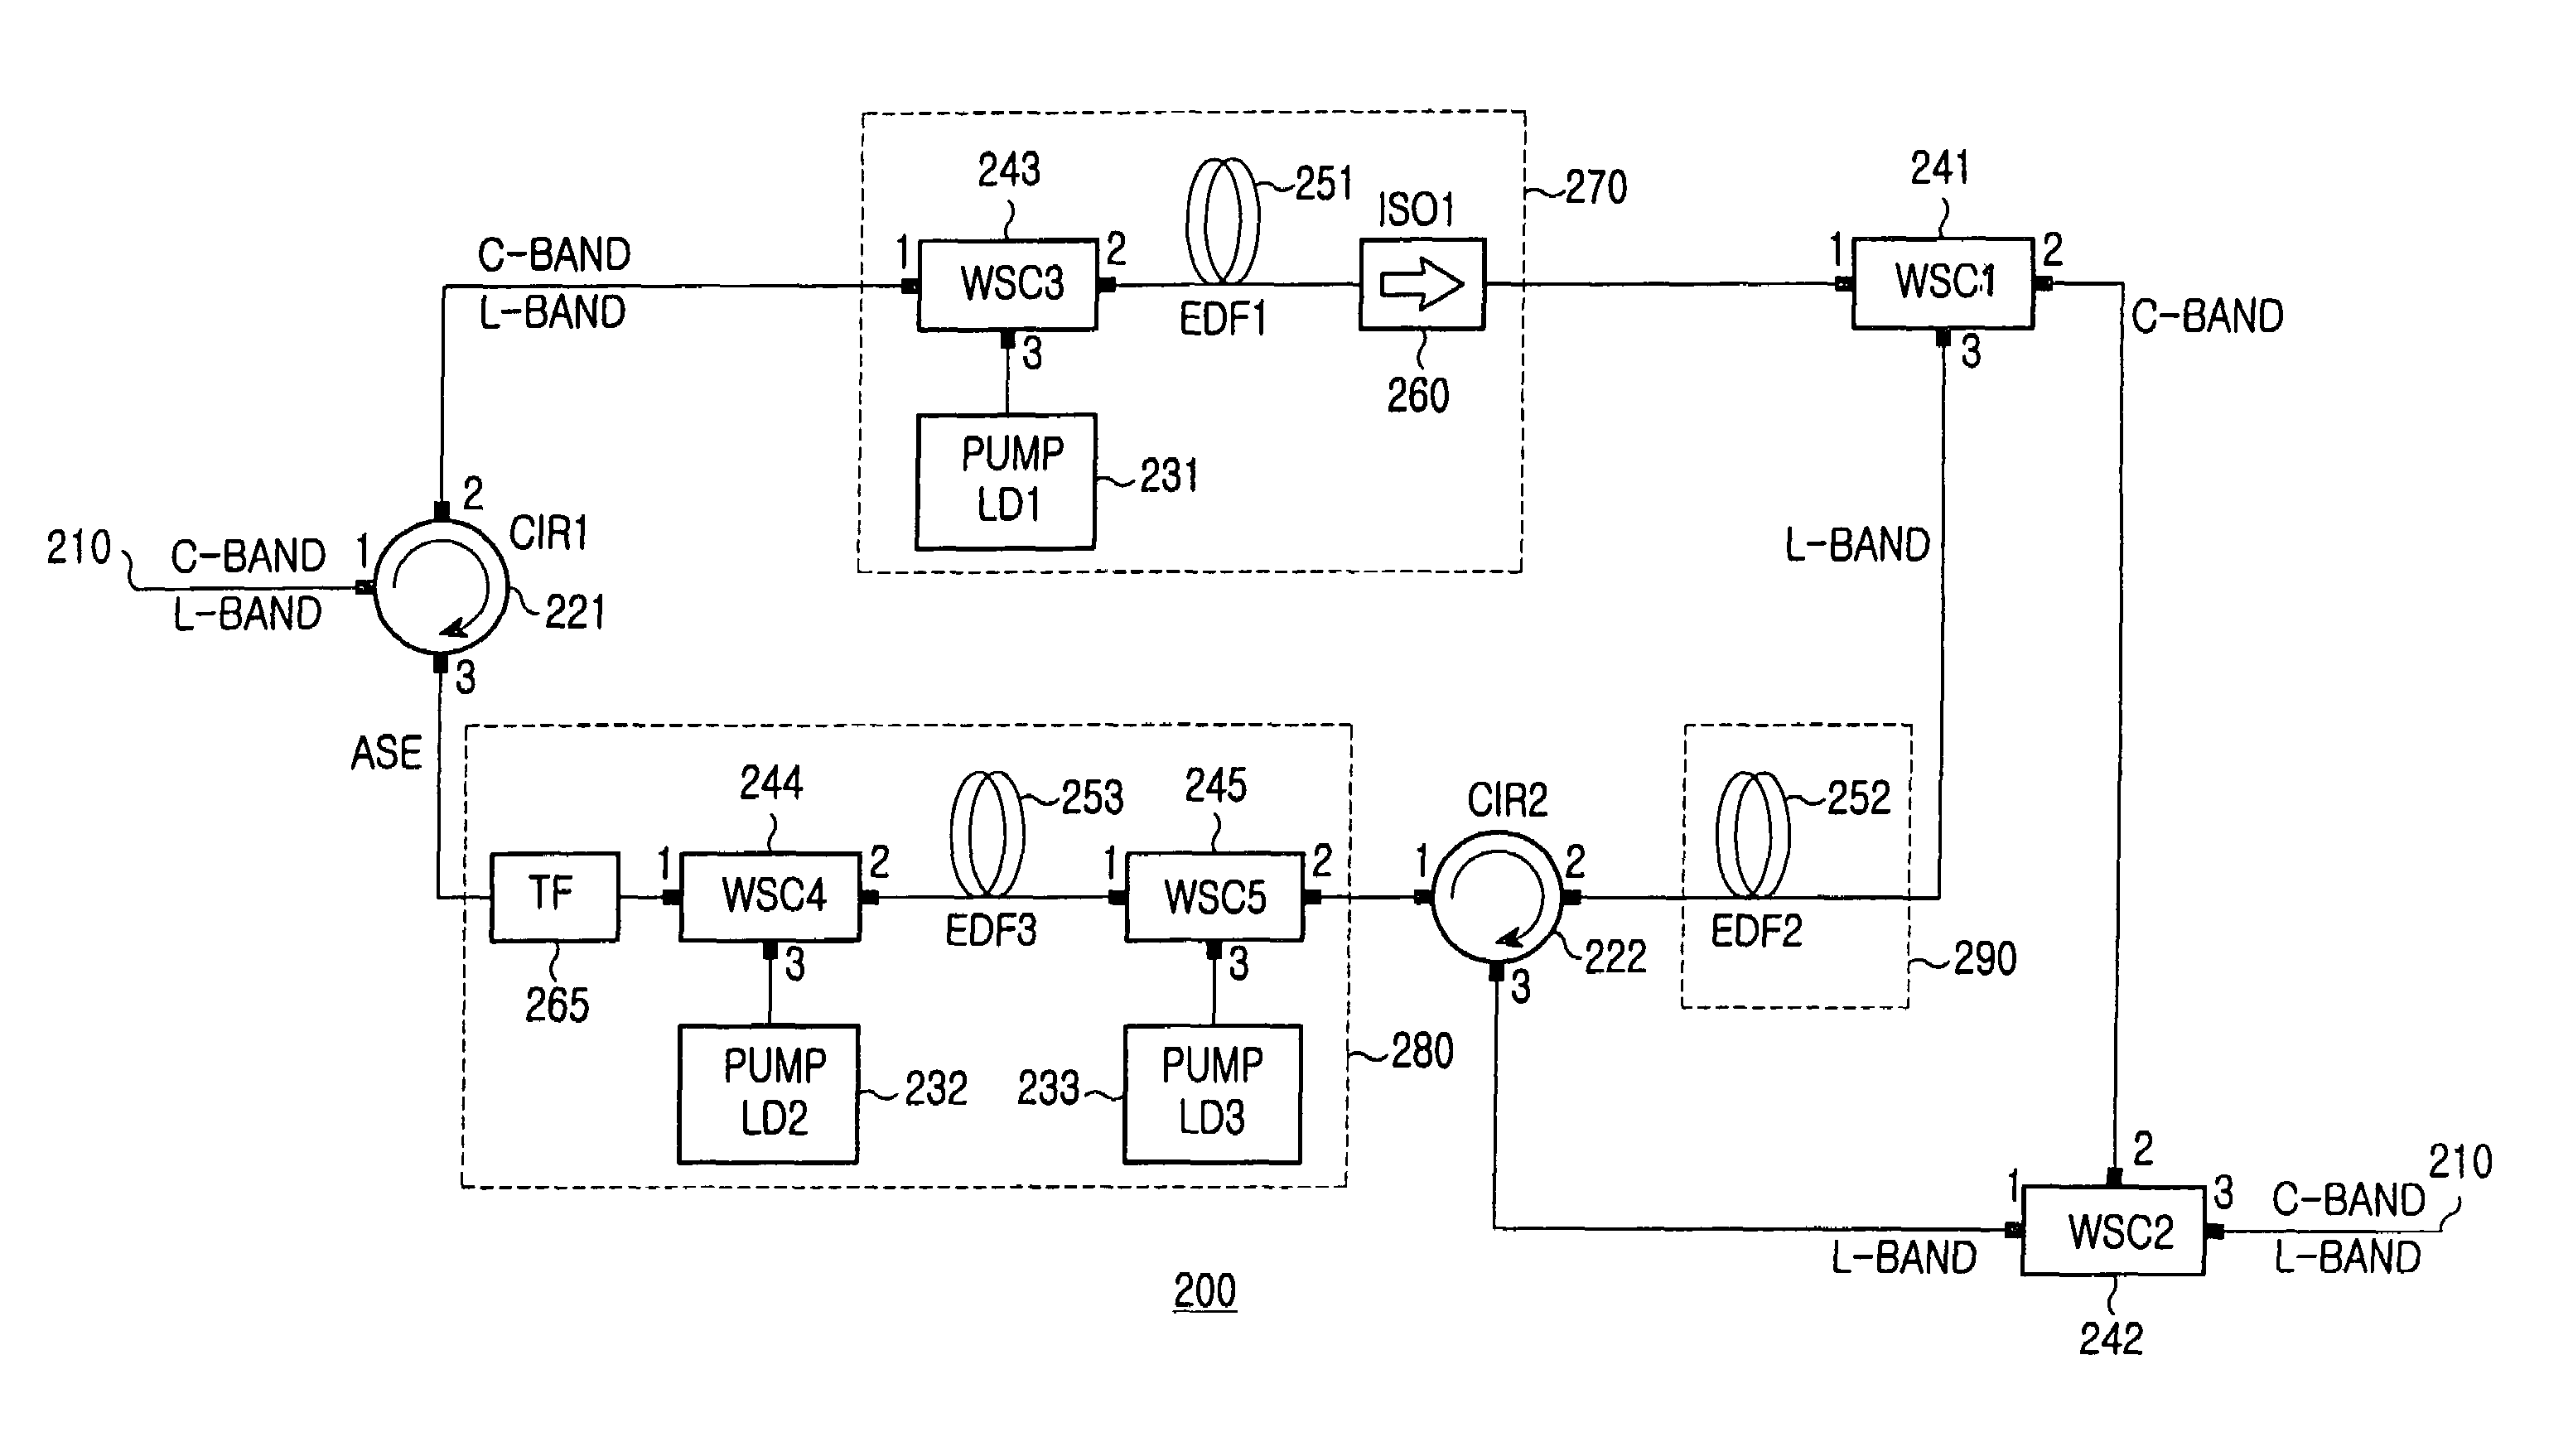 Wide-band fiber amplifier